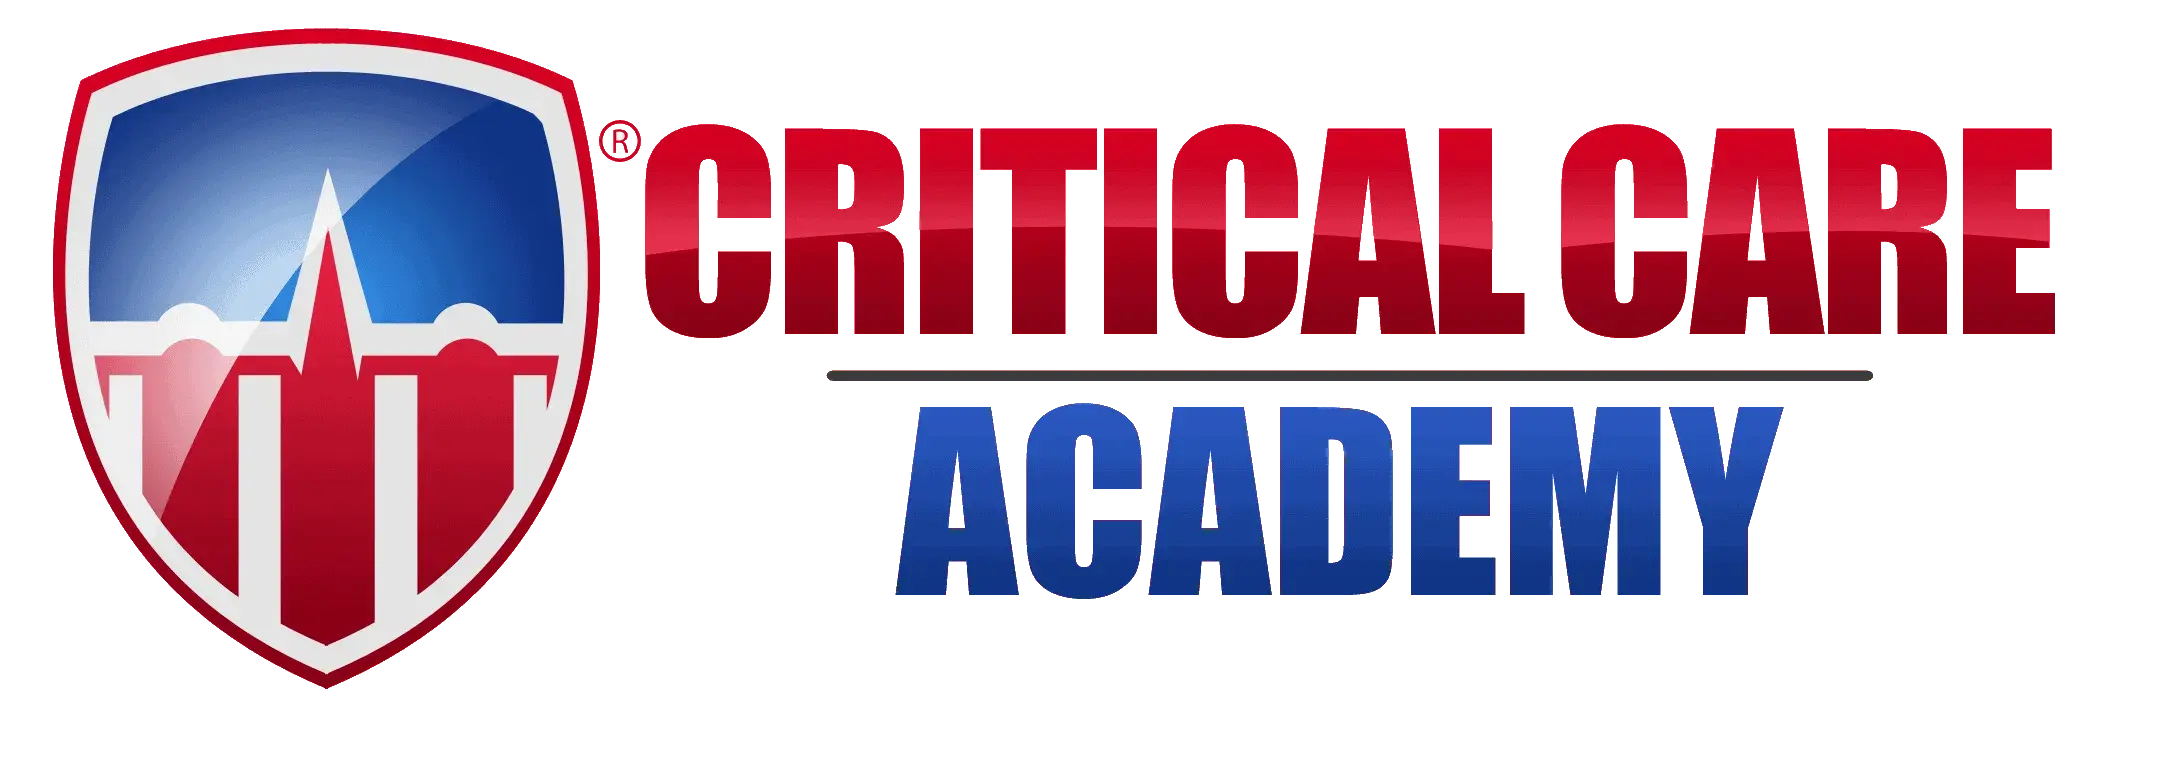 critical care academy logo